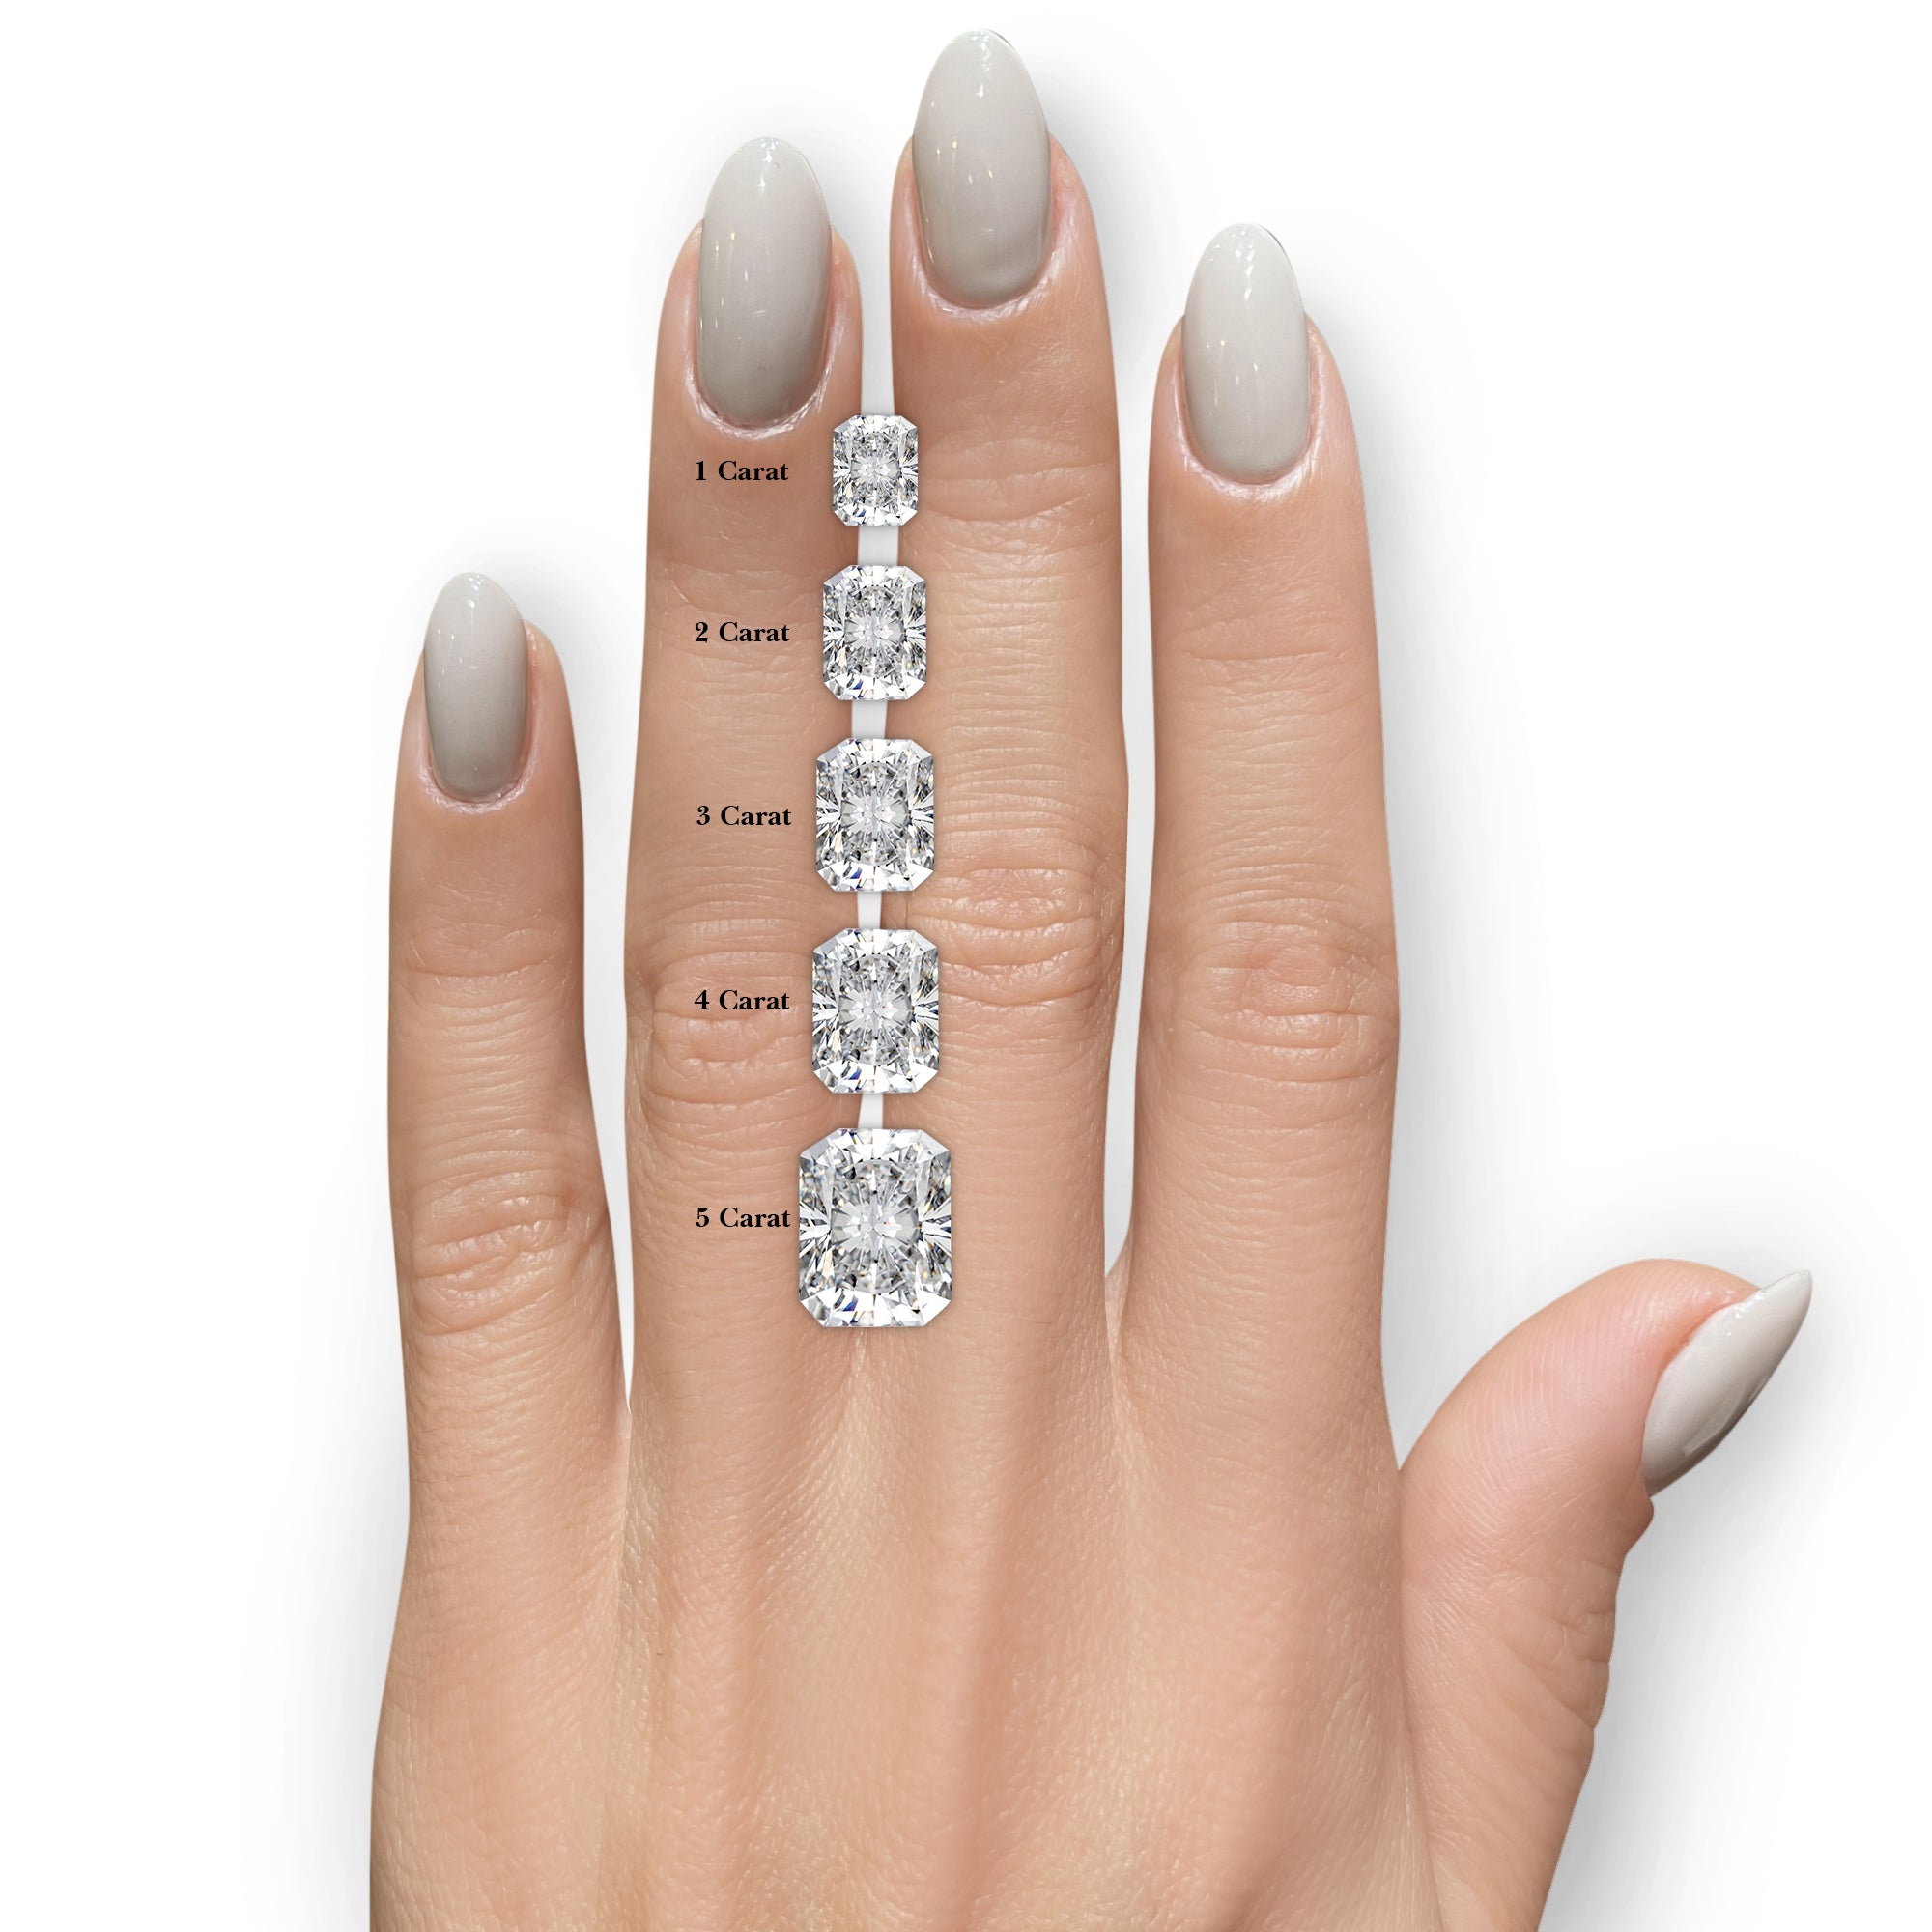 Andrea Diamond Engagement Ring -Platinum